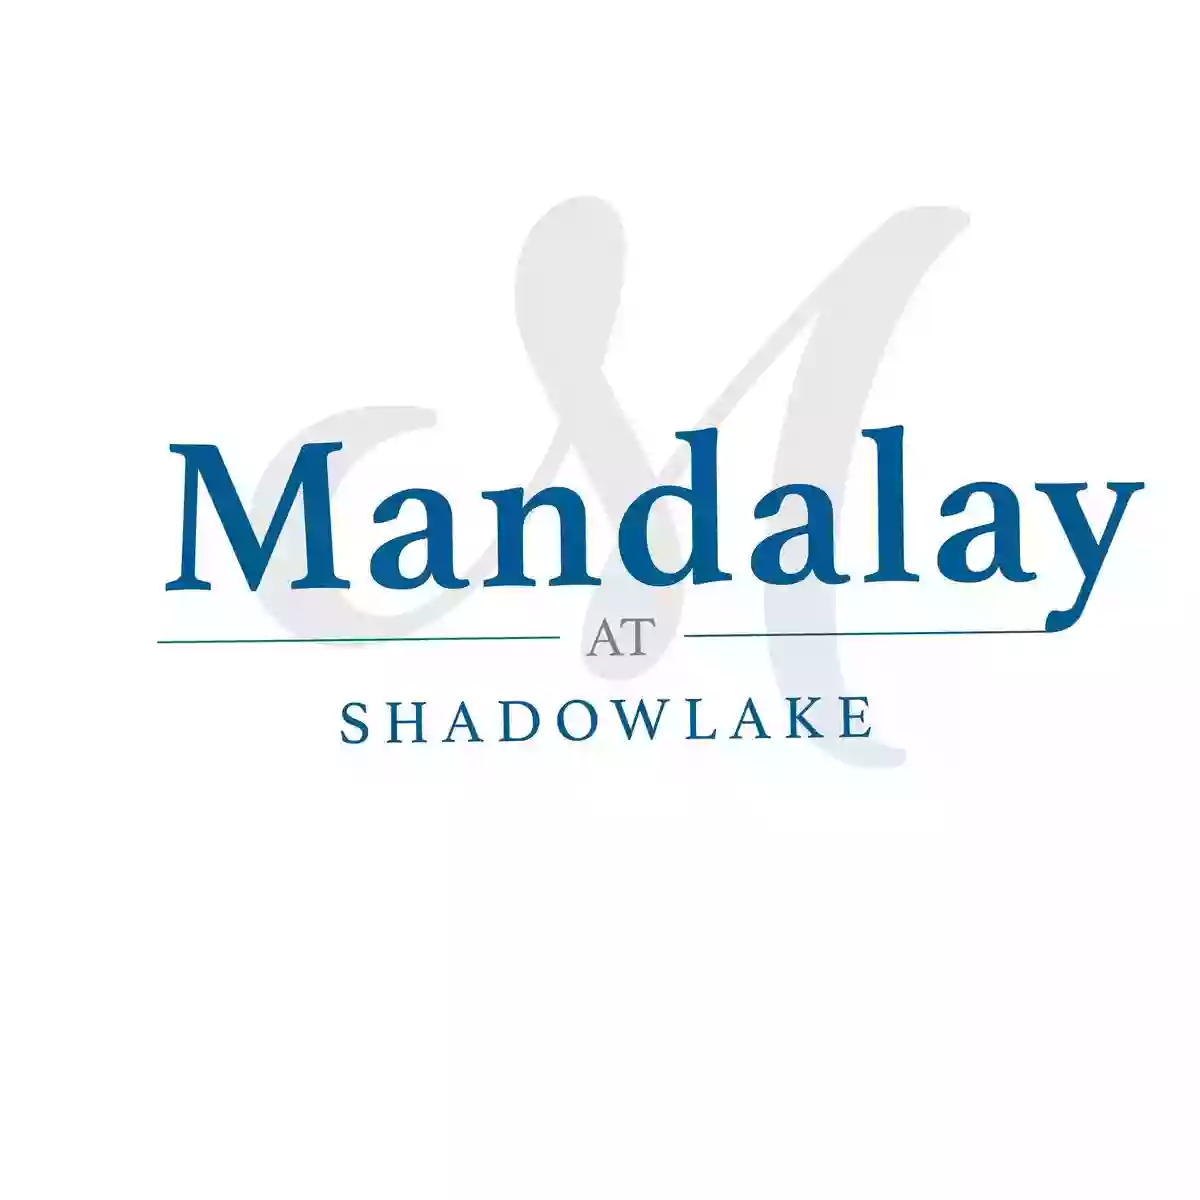 Mandalay at Shadow Lake